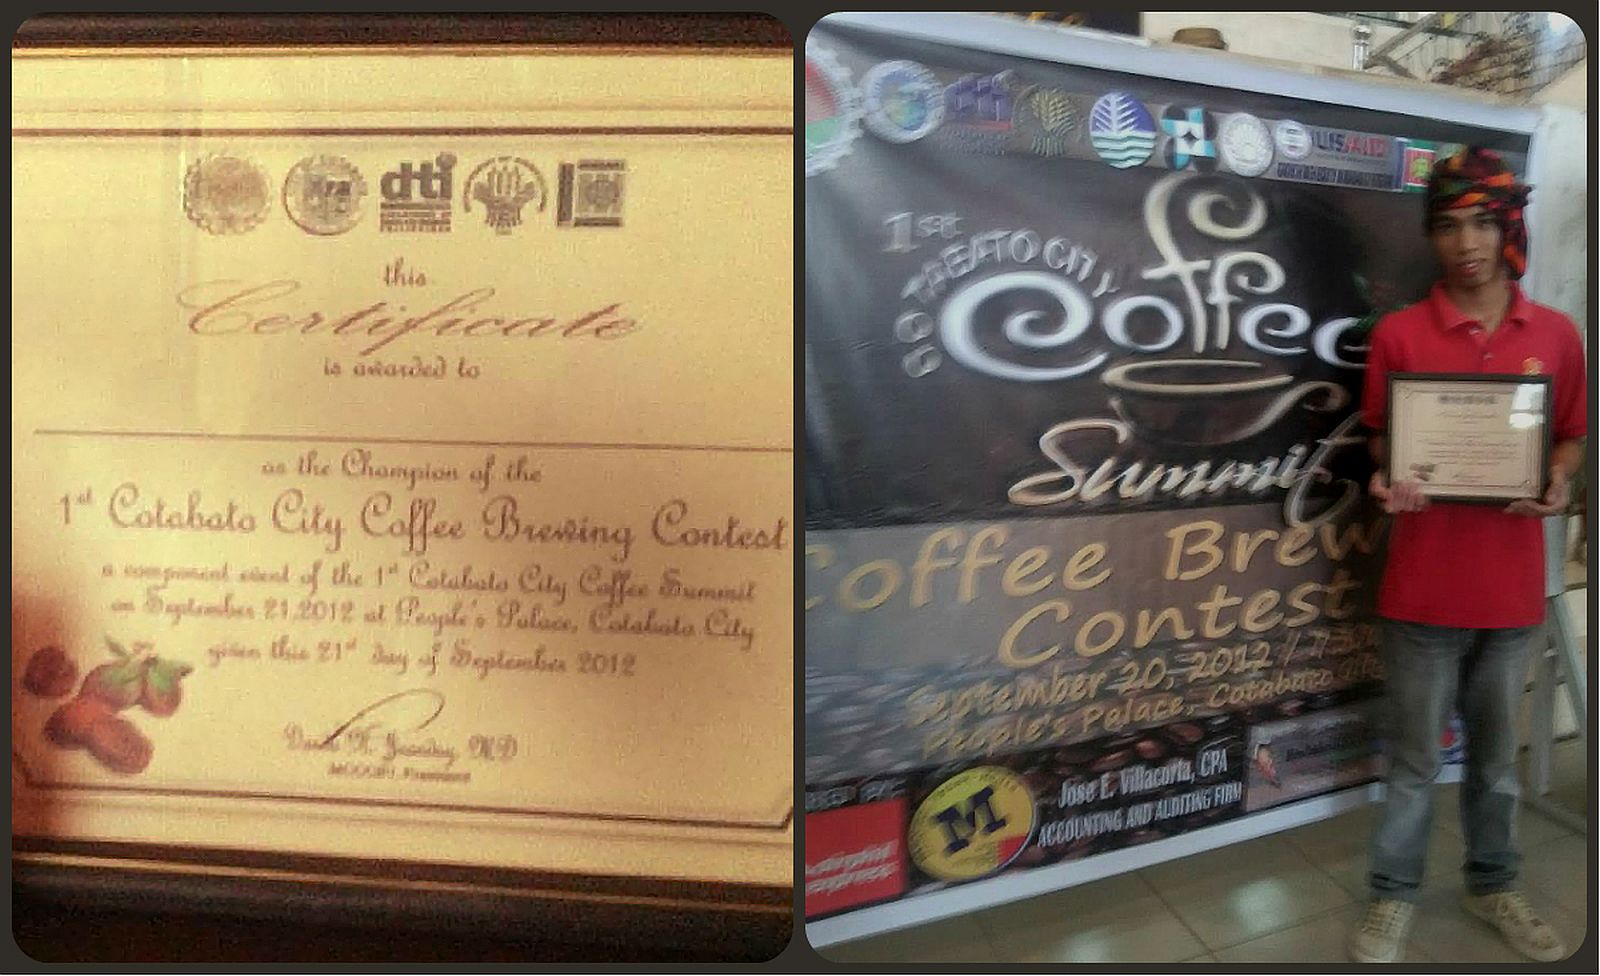 PHILIPPINEN REISEN - Leitfaden zu philippinsichem Kaffee